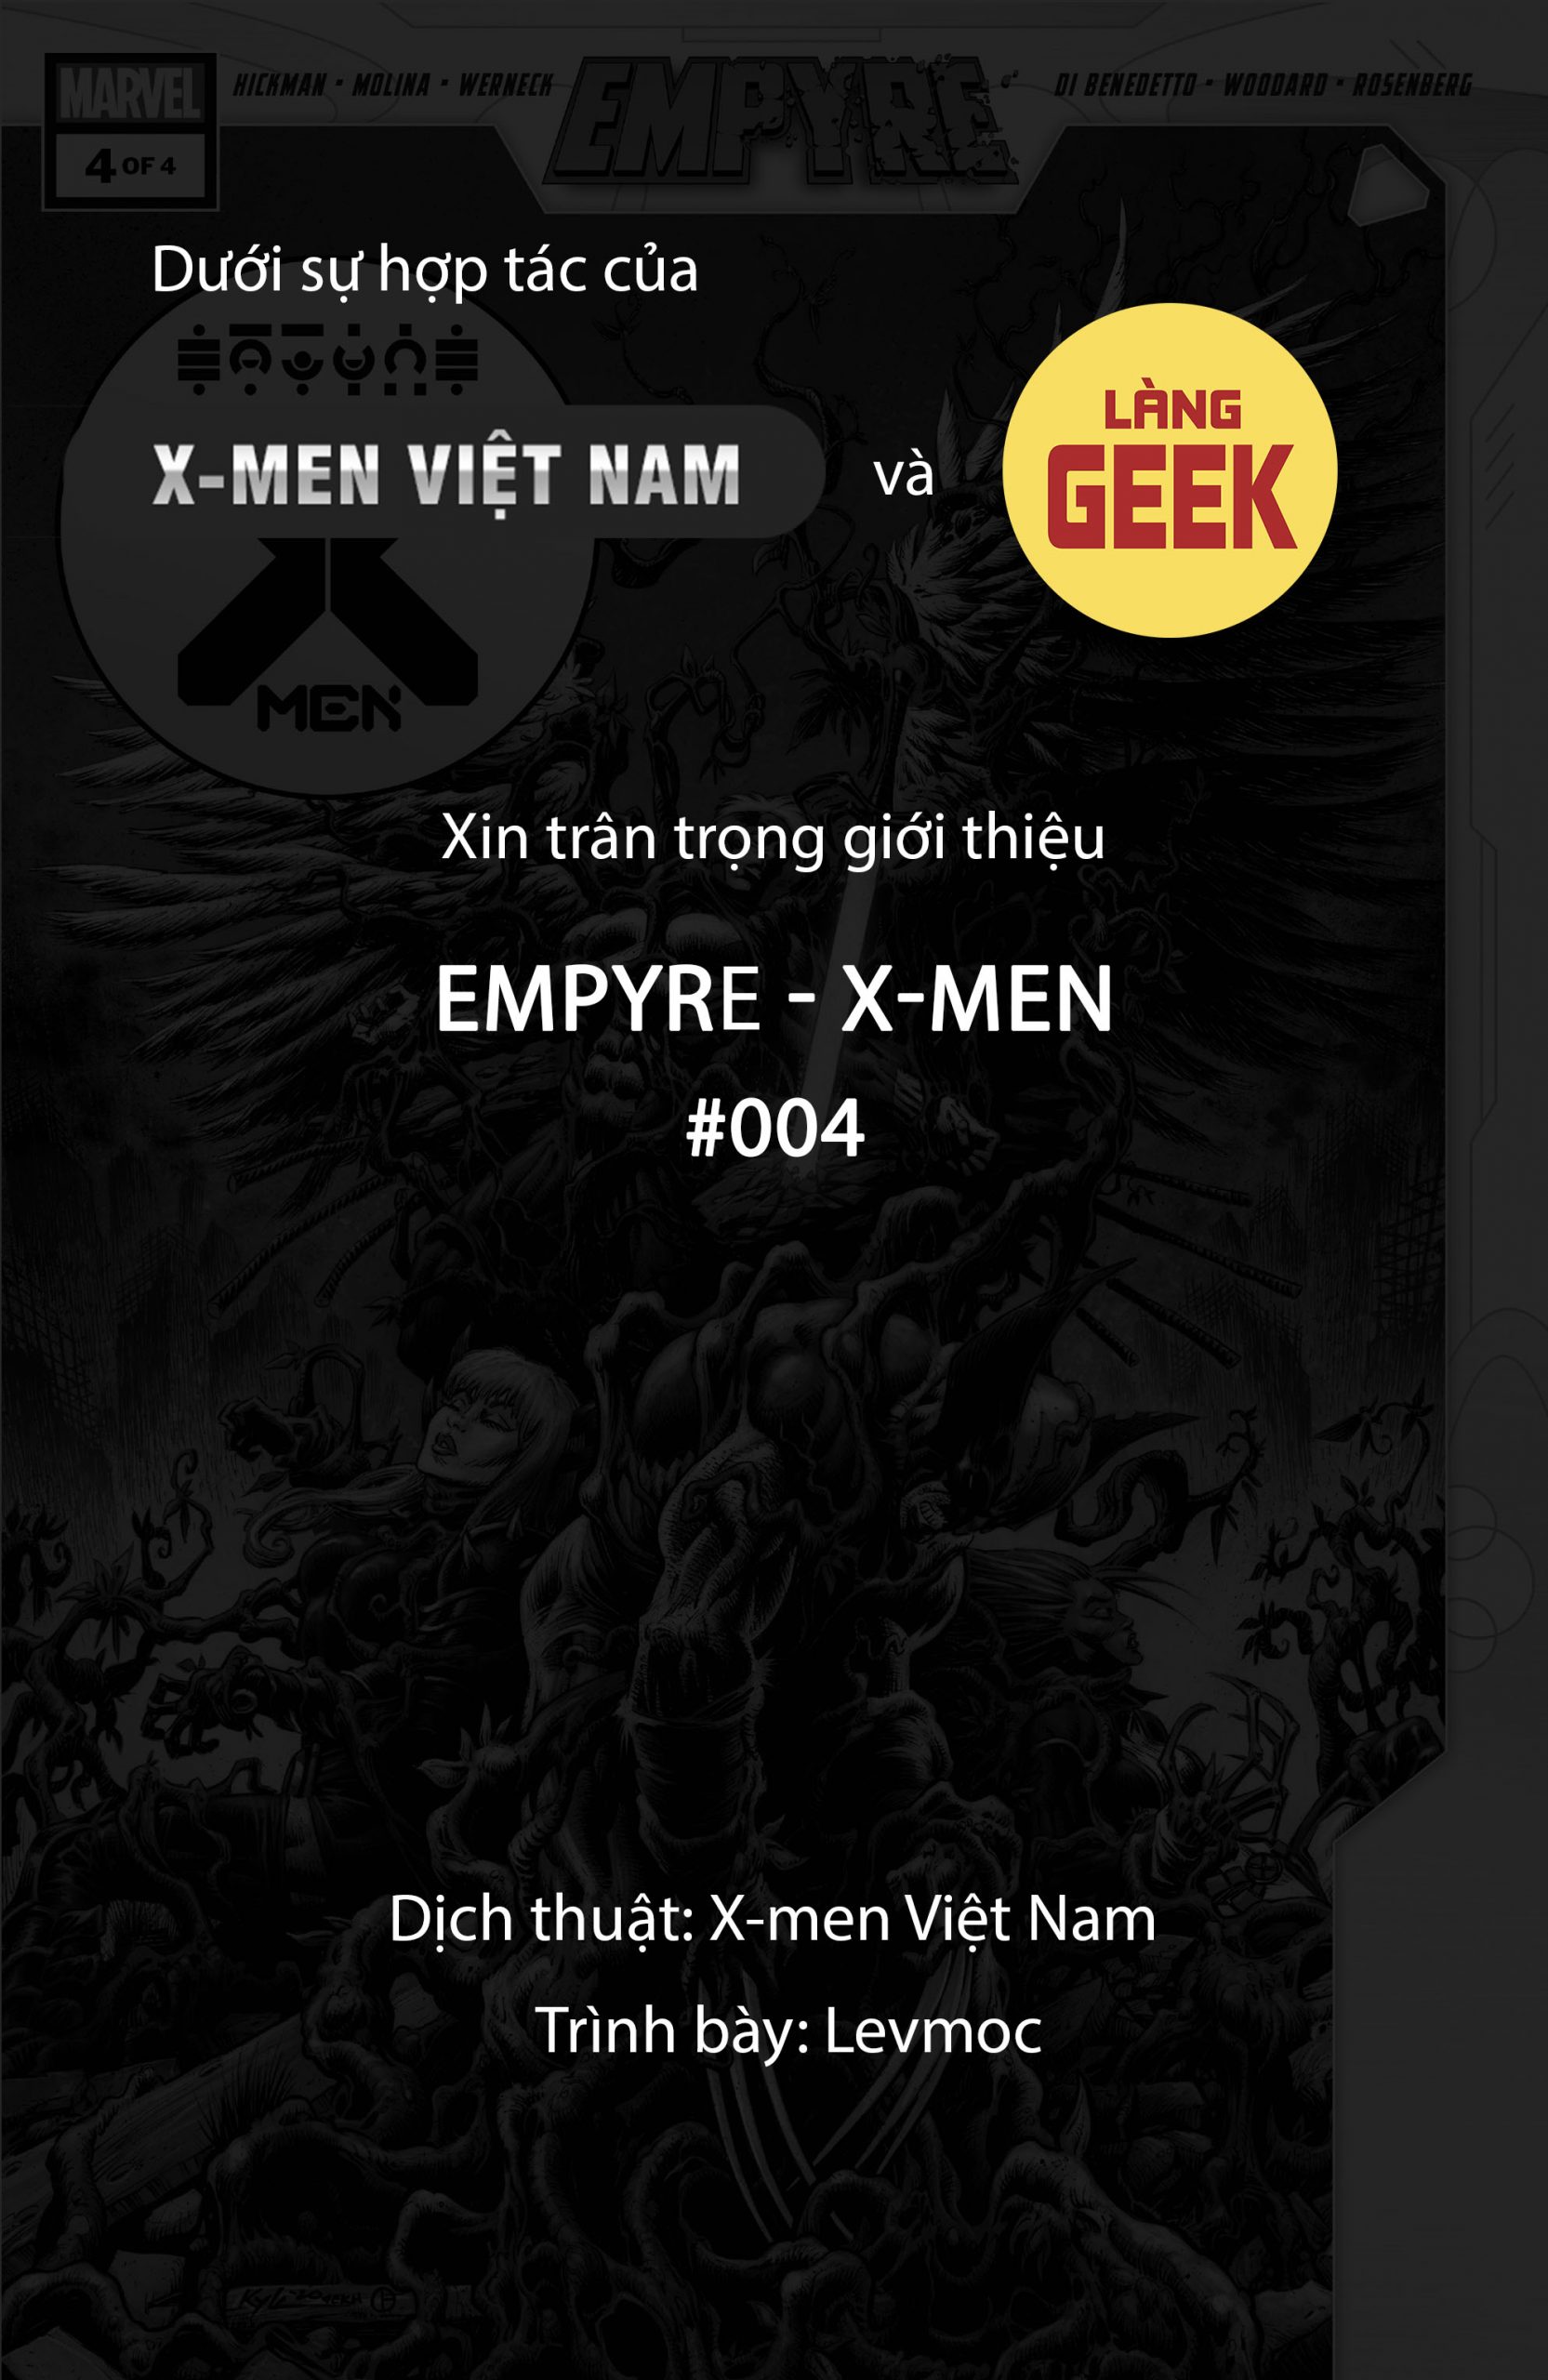 https://langgeek.net/wp-content/uploads/2021/12/Empyre-X-Men-2020-04-of-04-000-1-scaled.jpg